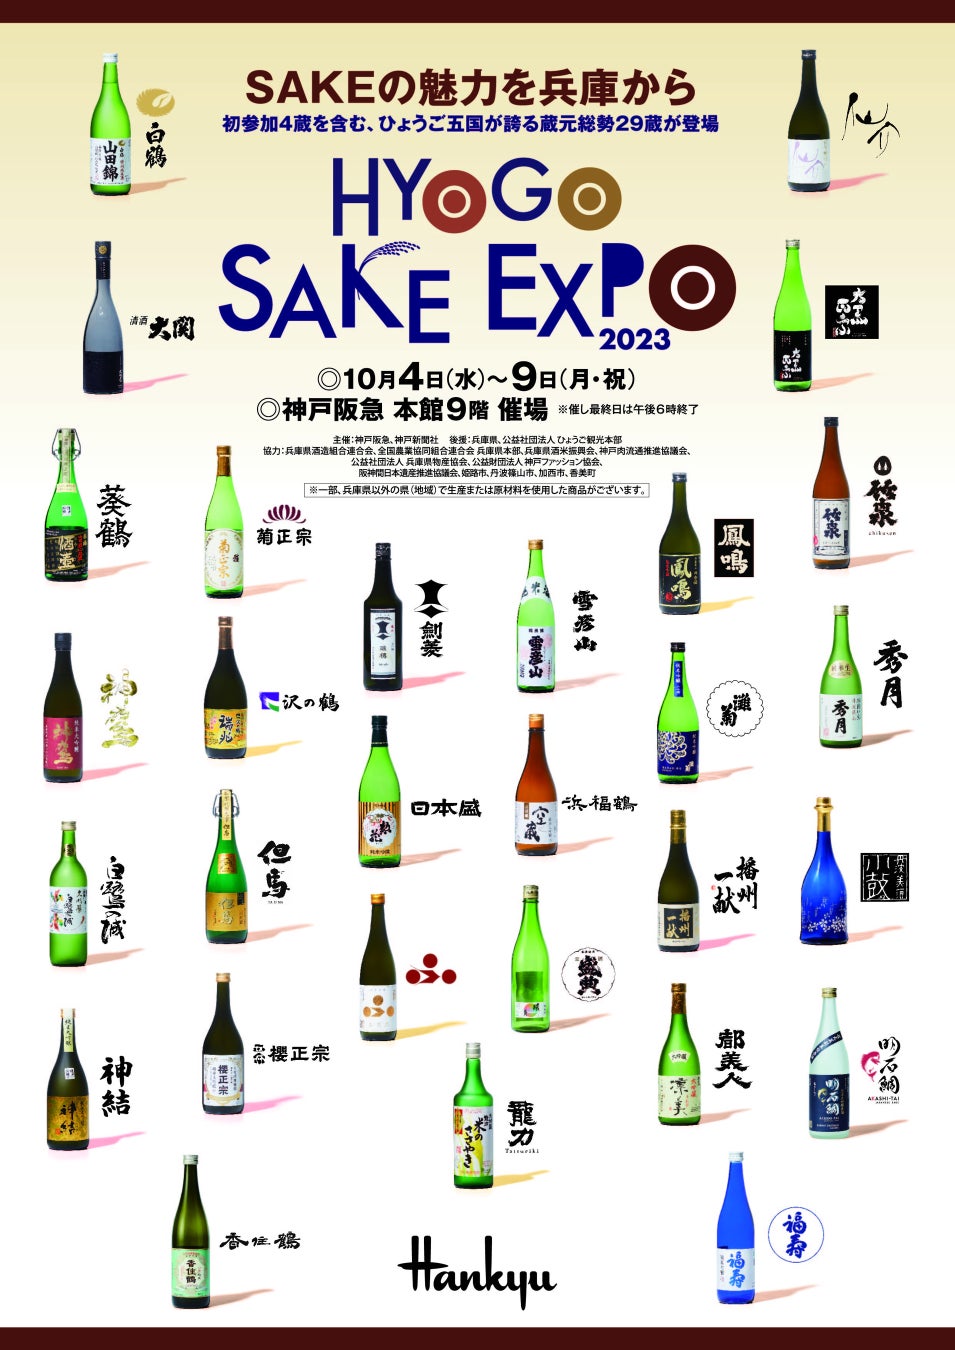 兵庫県内の酒蔵が集結するイベント「HYOGO SAKE EXPO 2023」が今年も開催